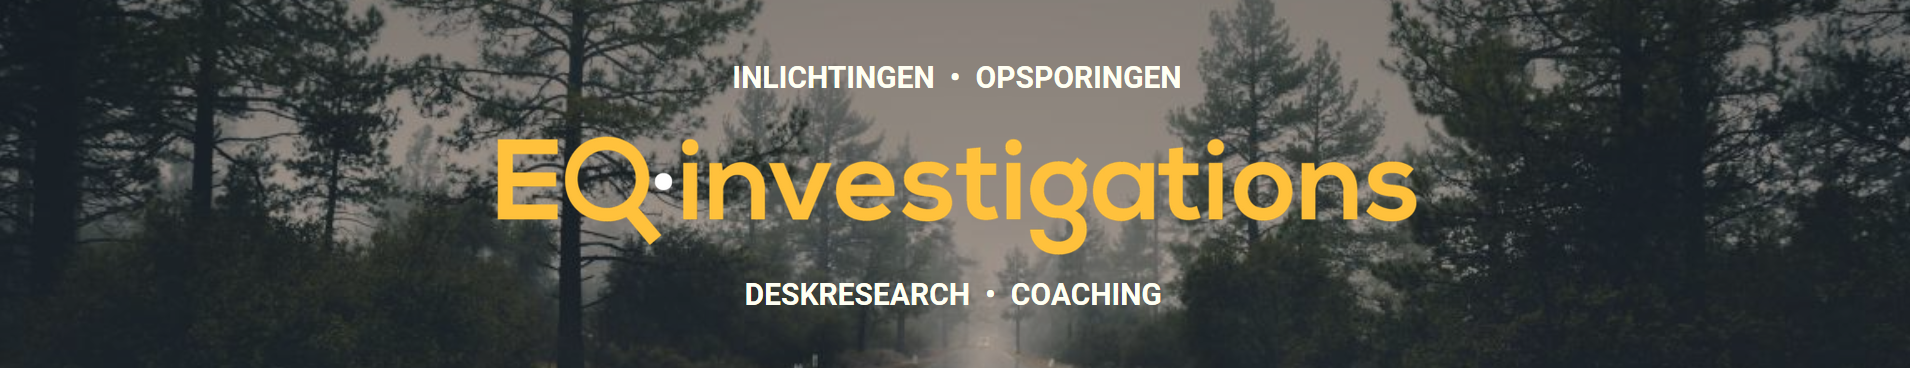 detectivekantoor Brugge Knokke Kortrijk